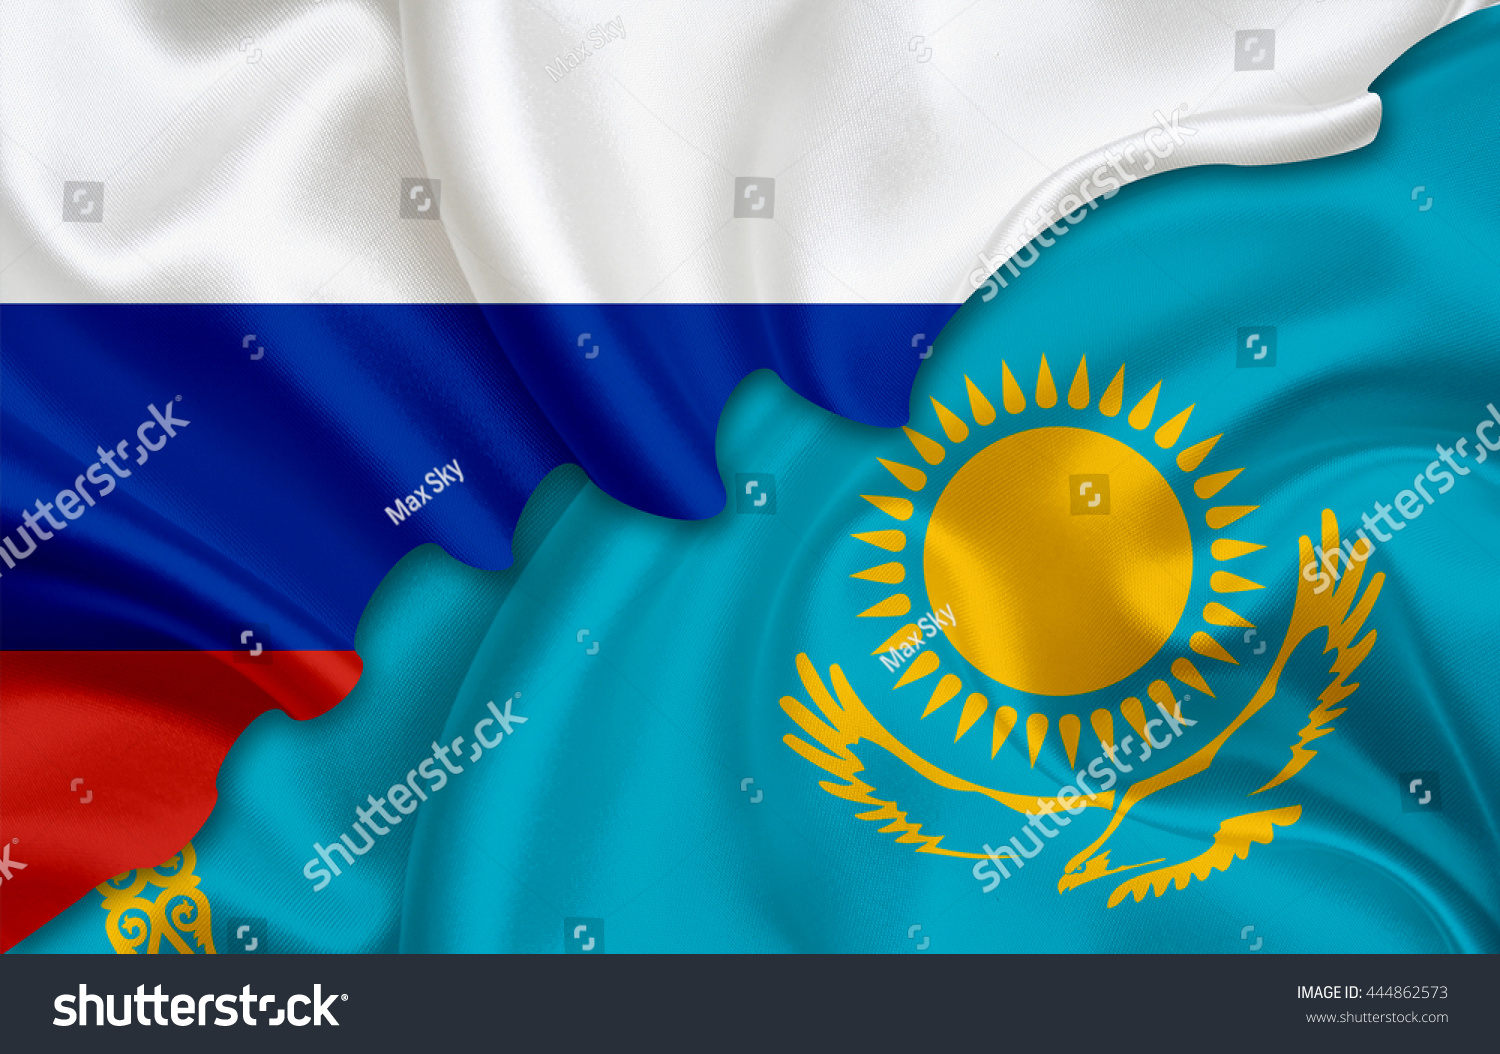 Флаг России и Казахстана